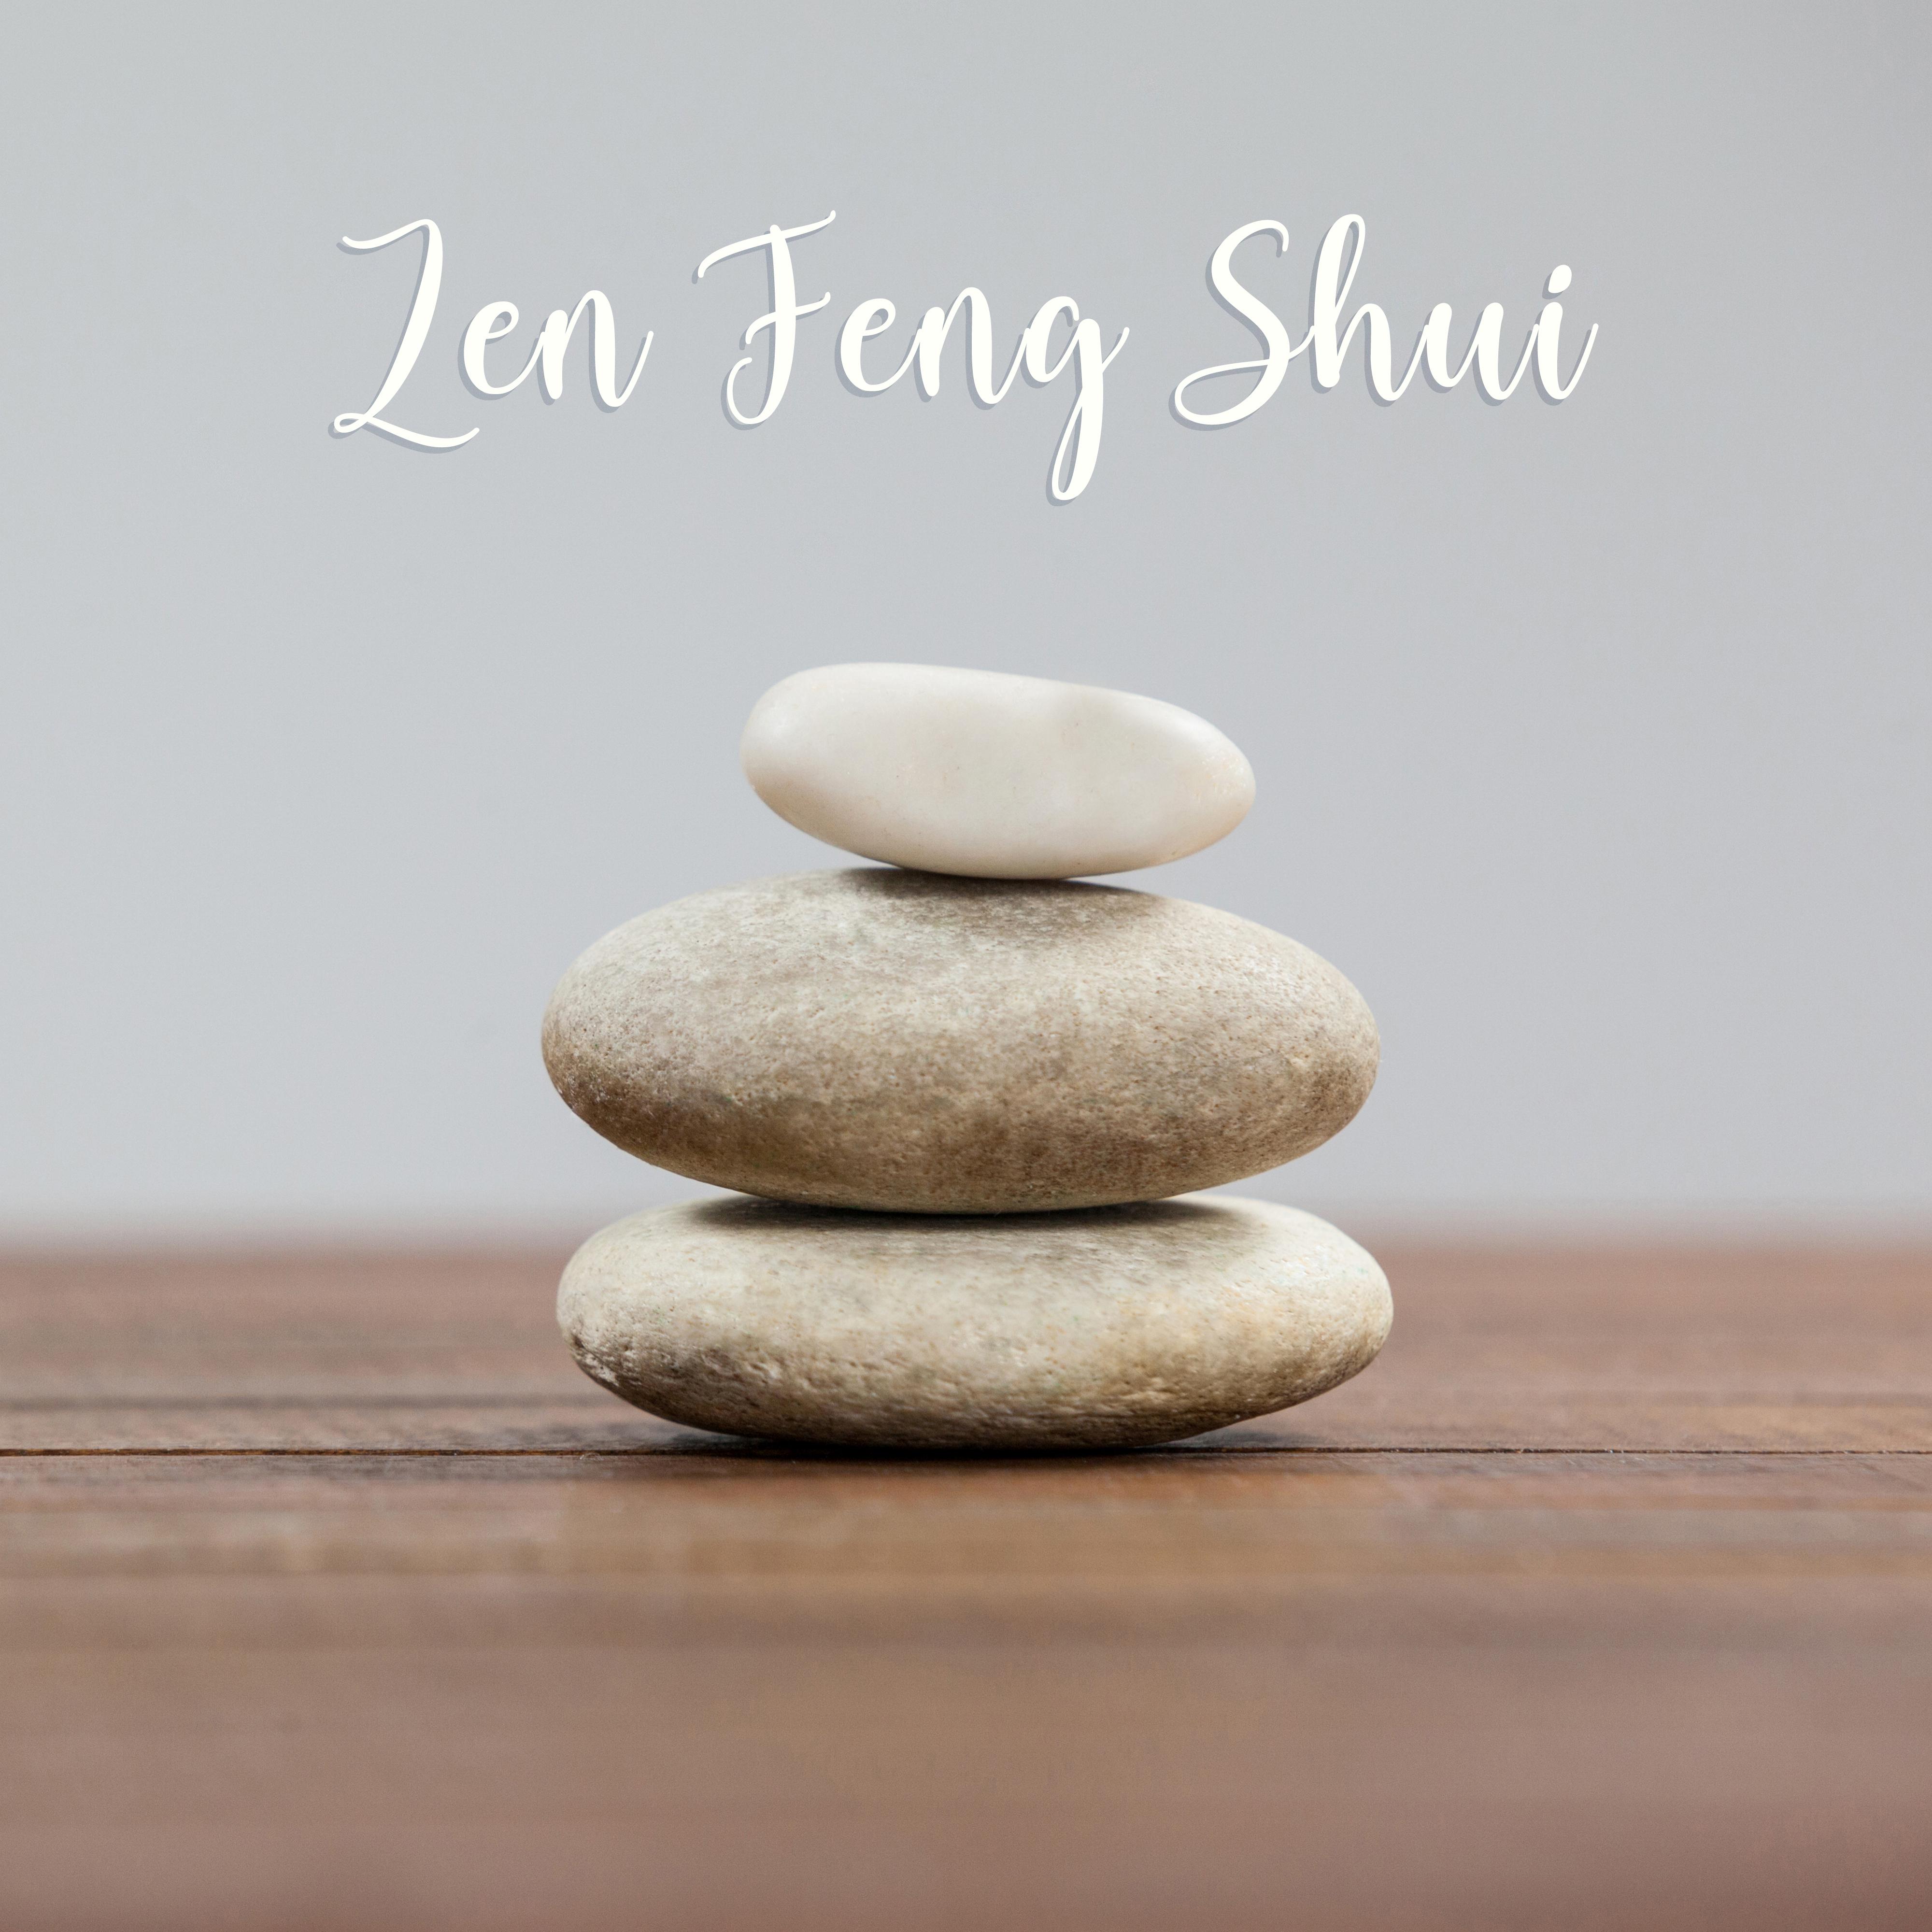 Zen Feng Shui